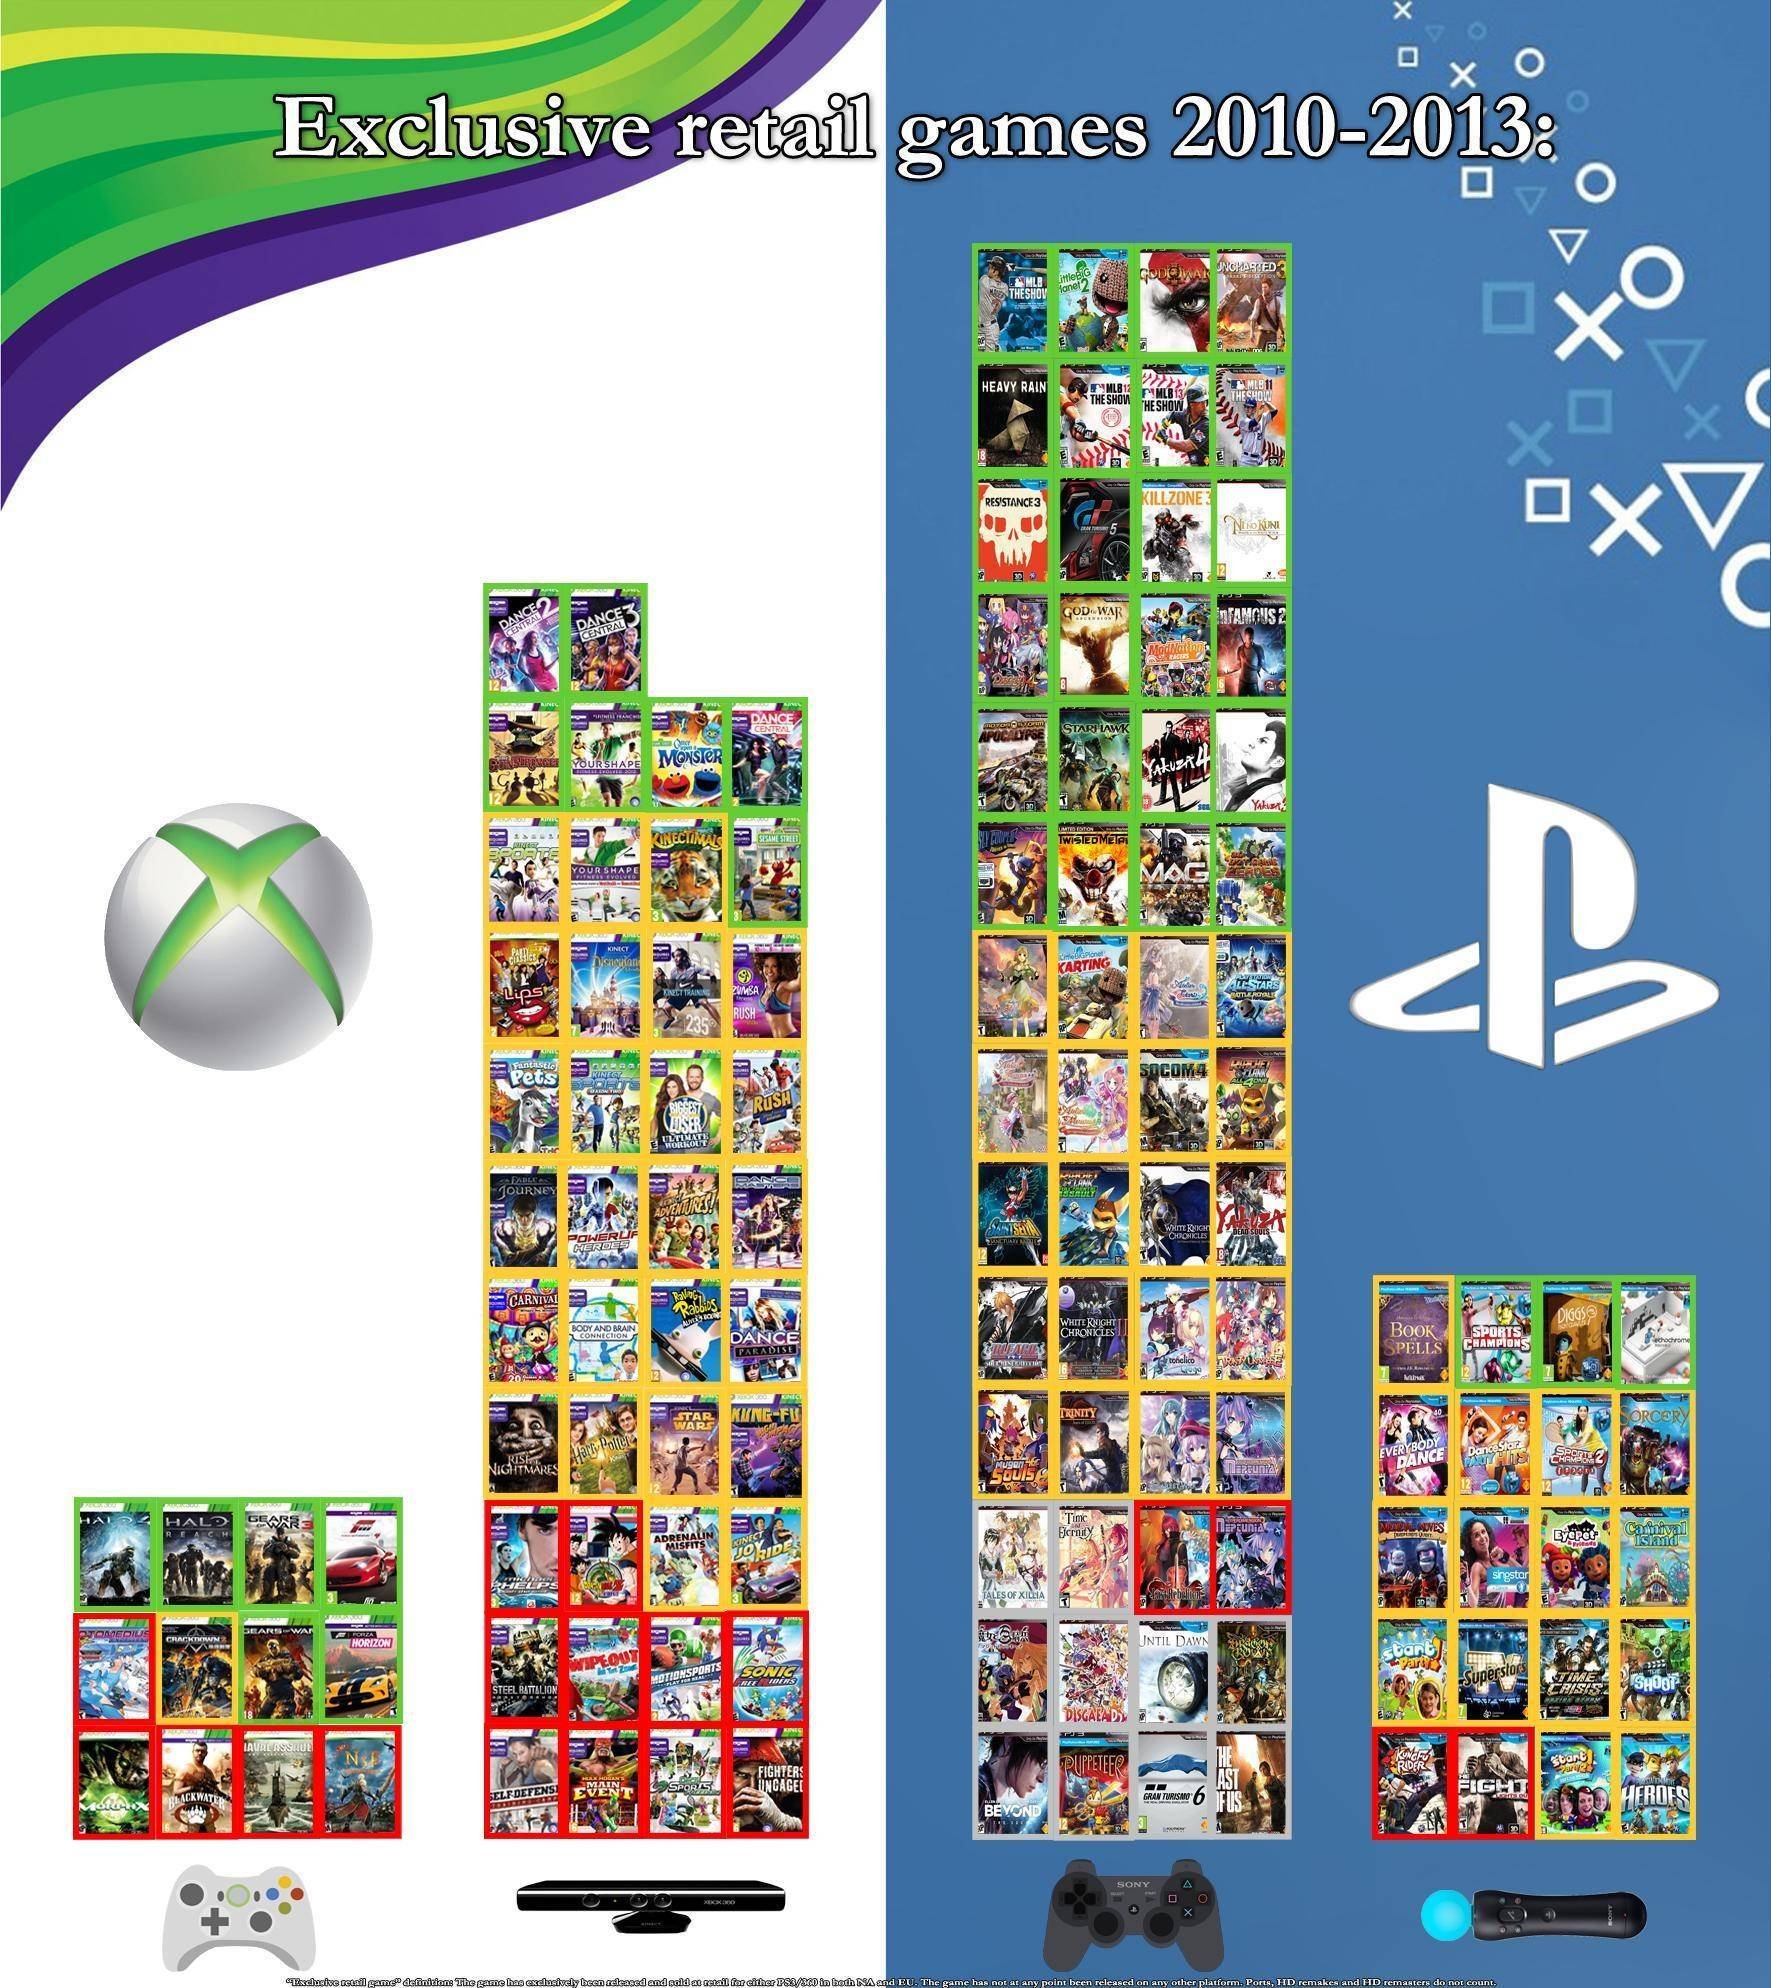 [Exclusivos] PS3 x Xbox 360 no fim da geração Original